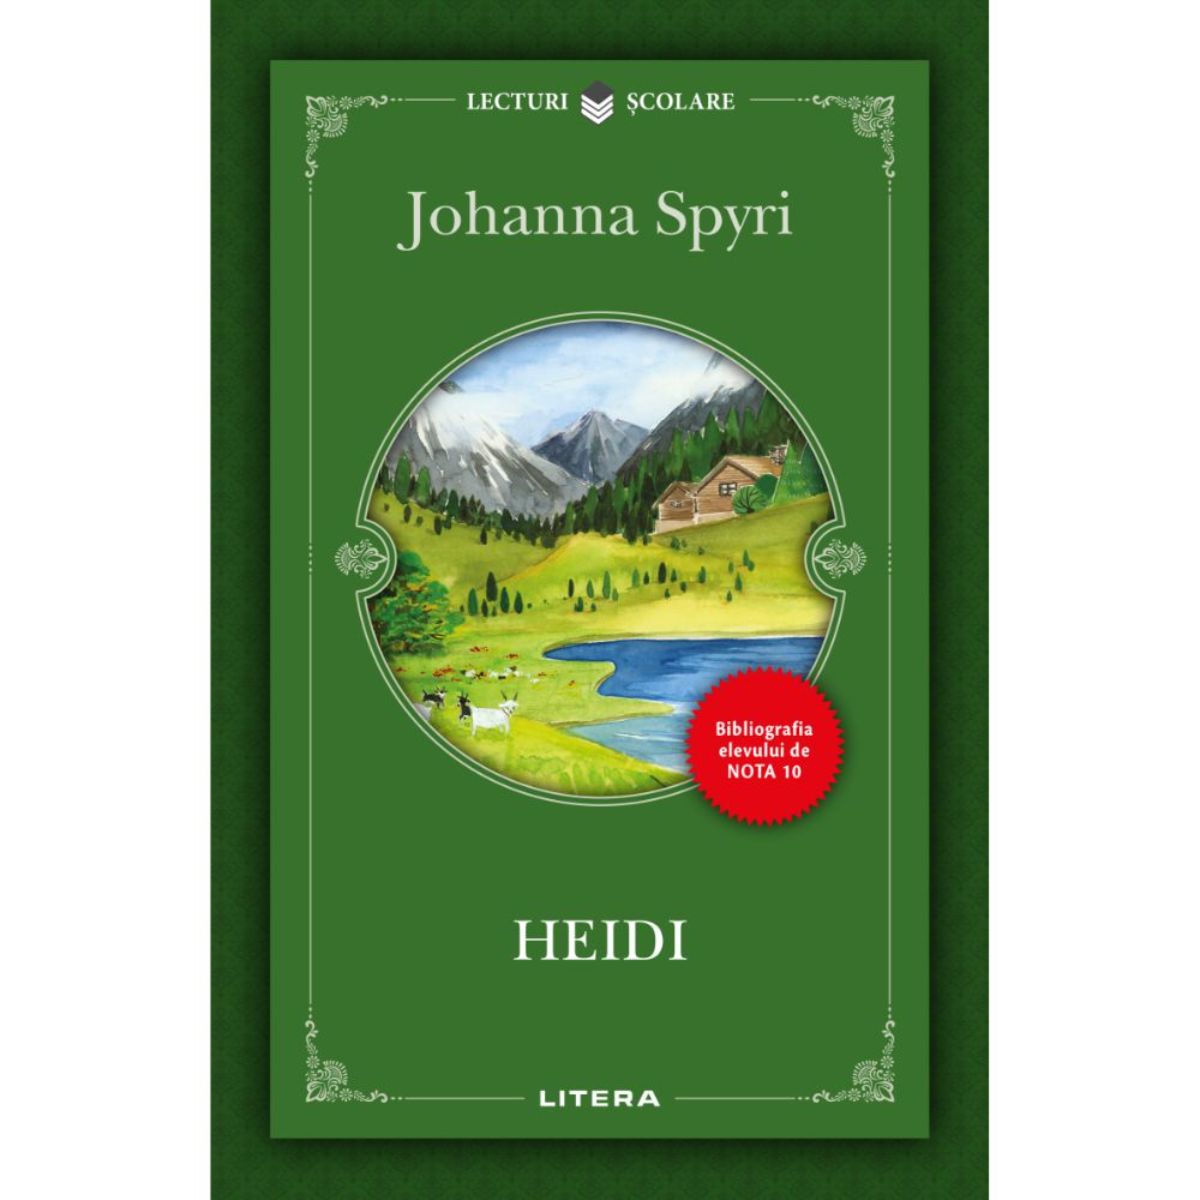 Poze Heidi, Johanna Spyri, Editie noua